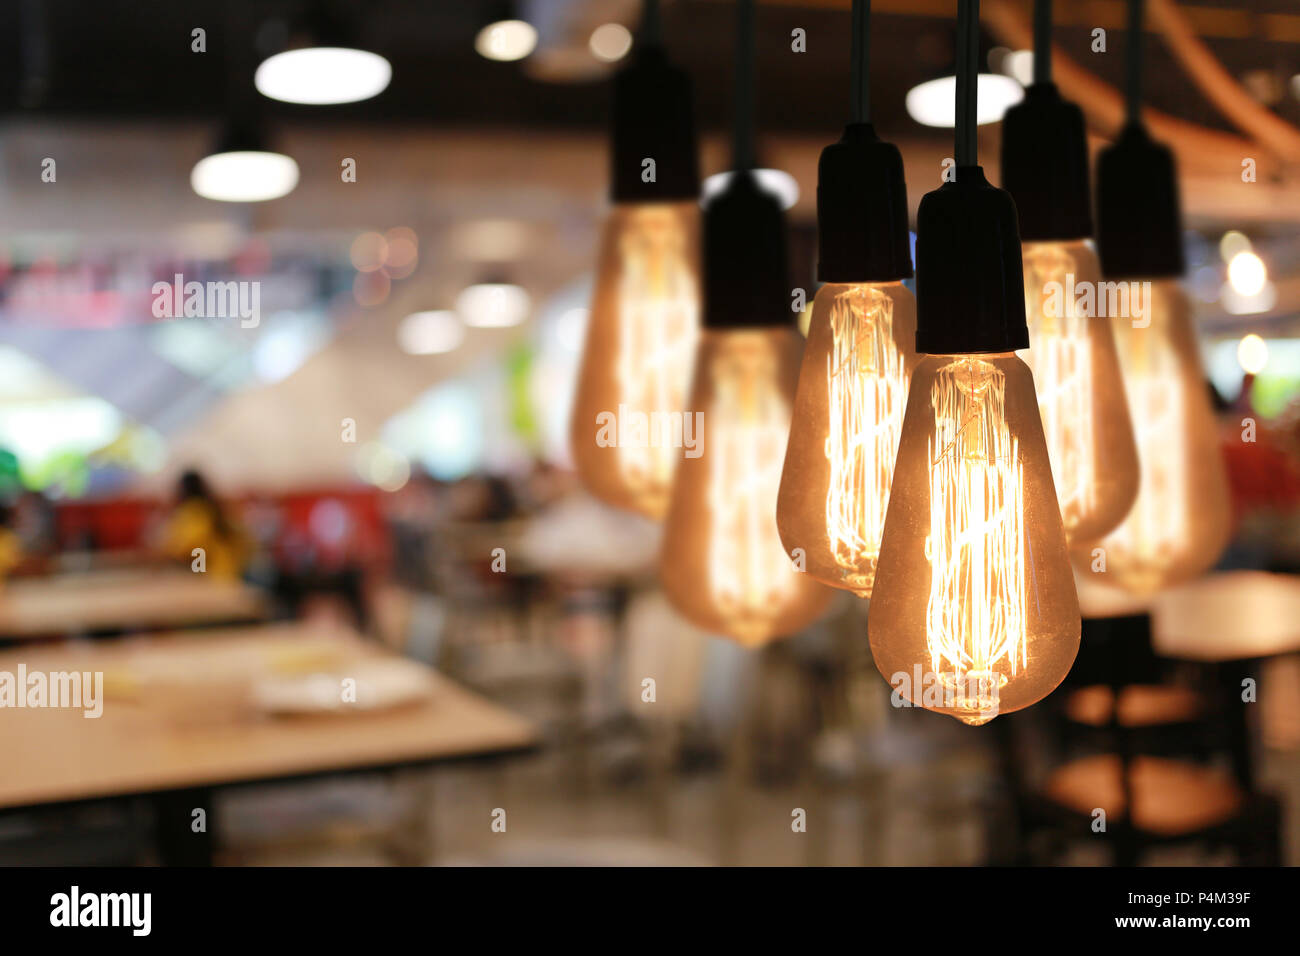 Lampade Vintage in un ristorante,concetto di interno con luci. Foto Stock